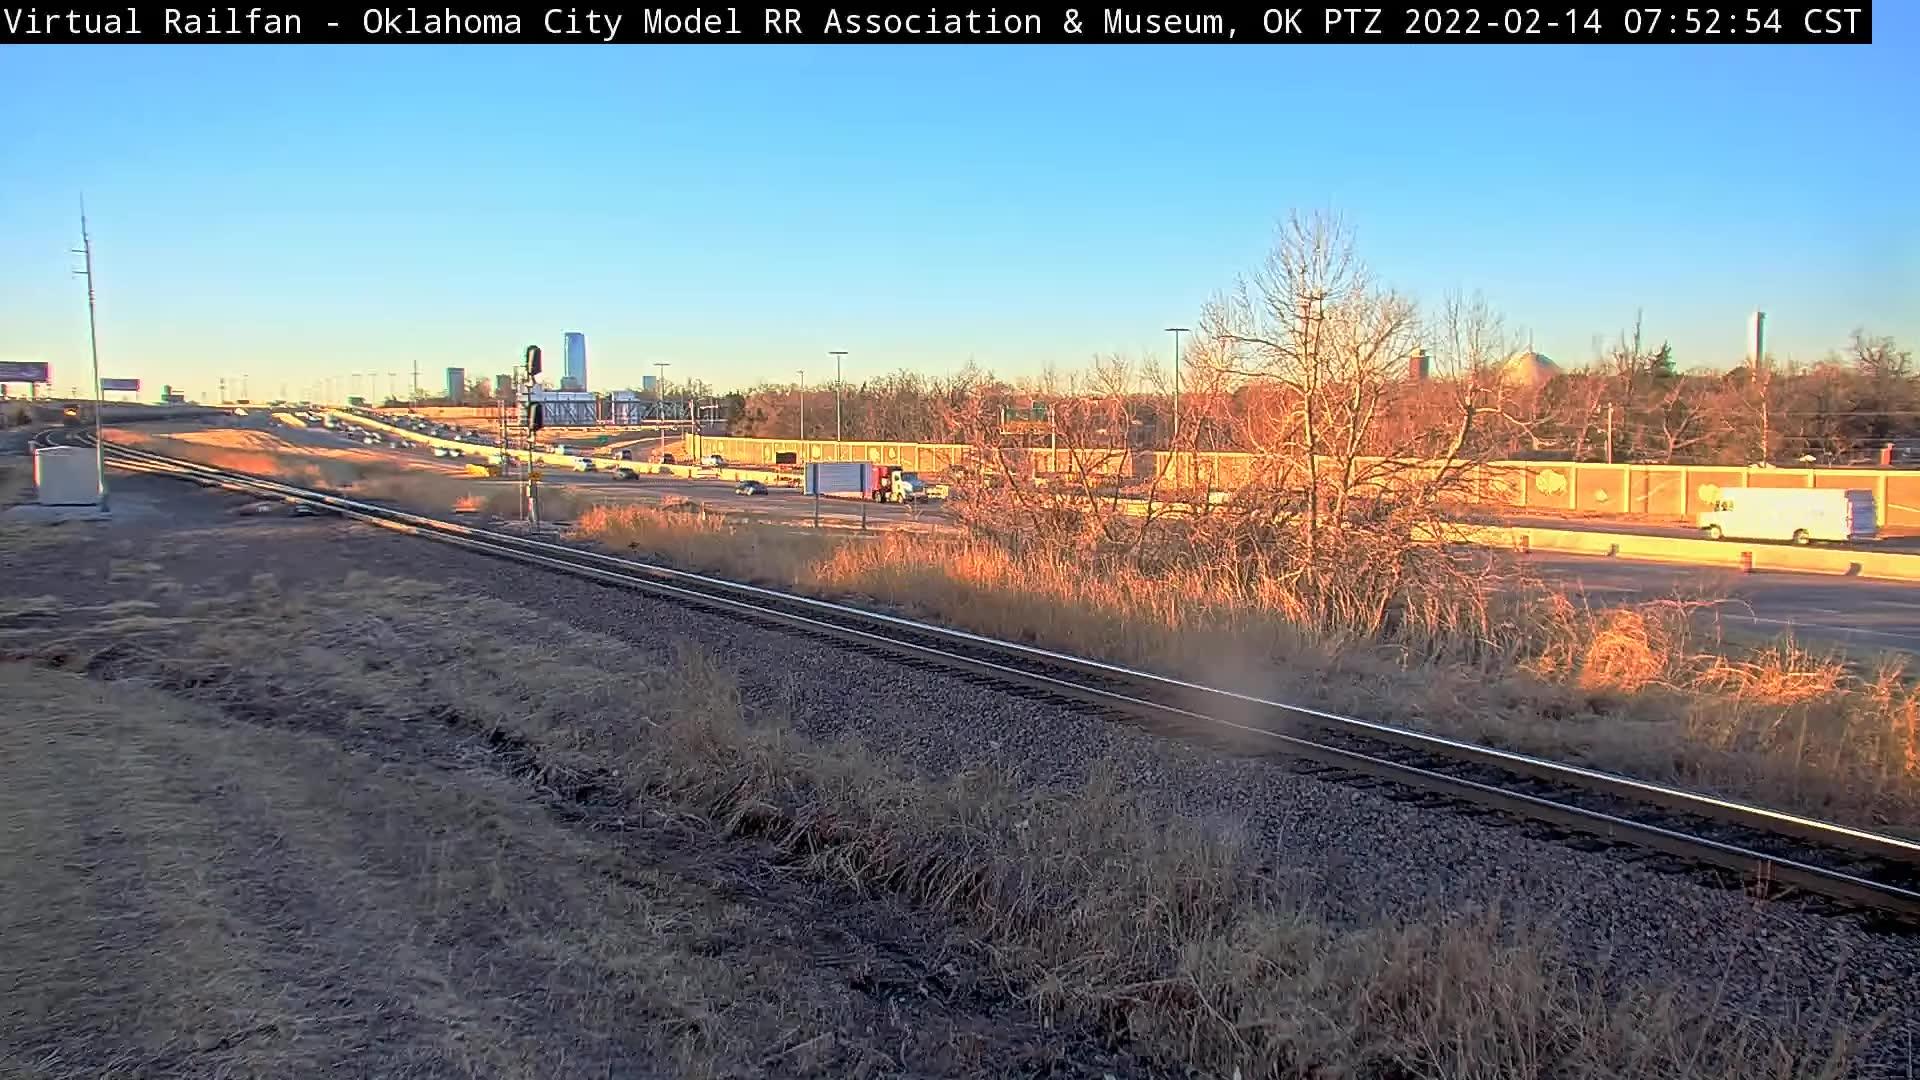 Oklahoma City: Oklahoma Model Railroad Association Traffic Camera